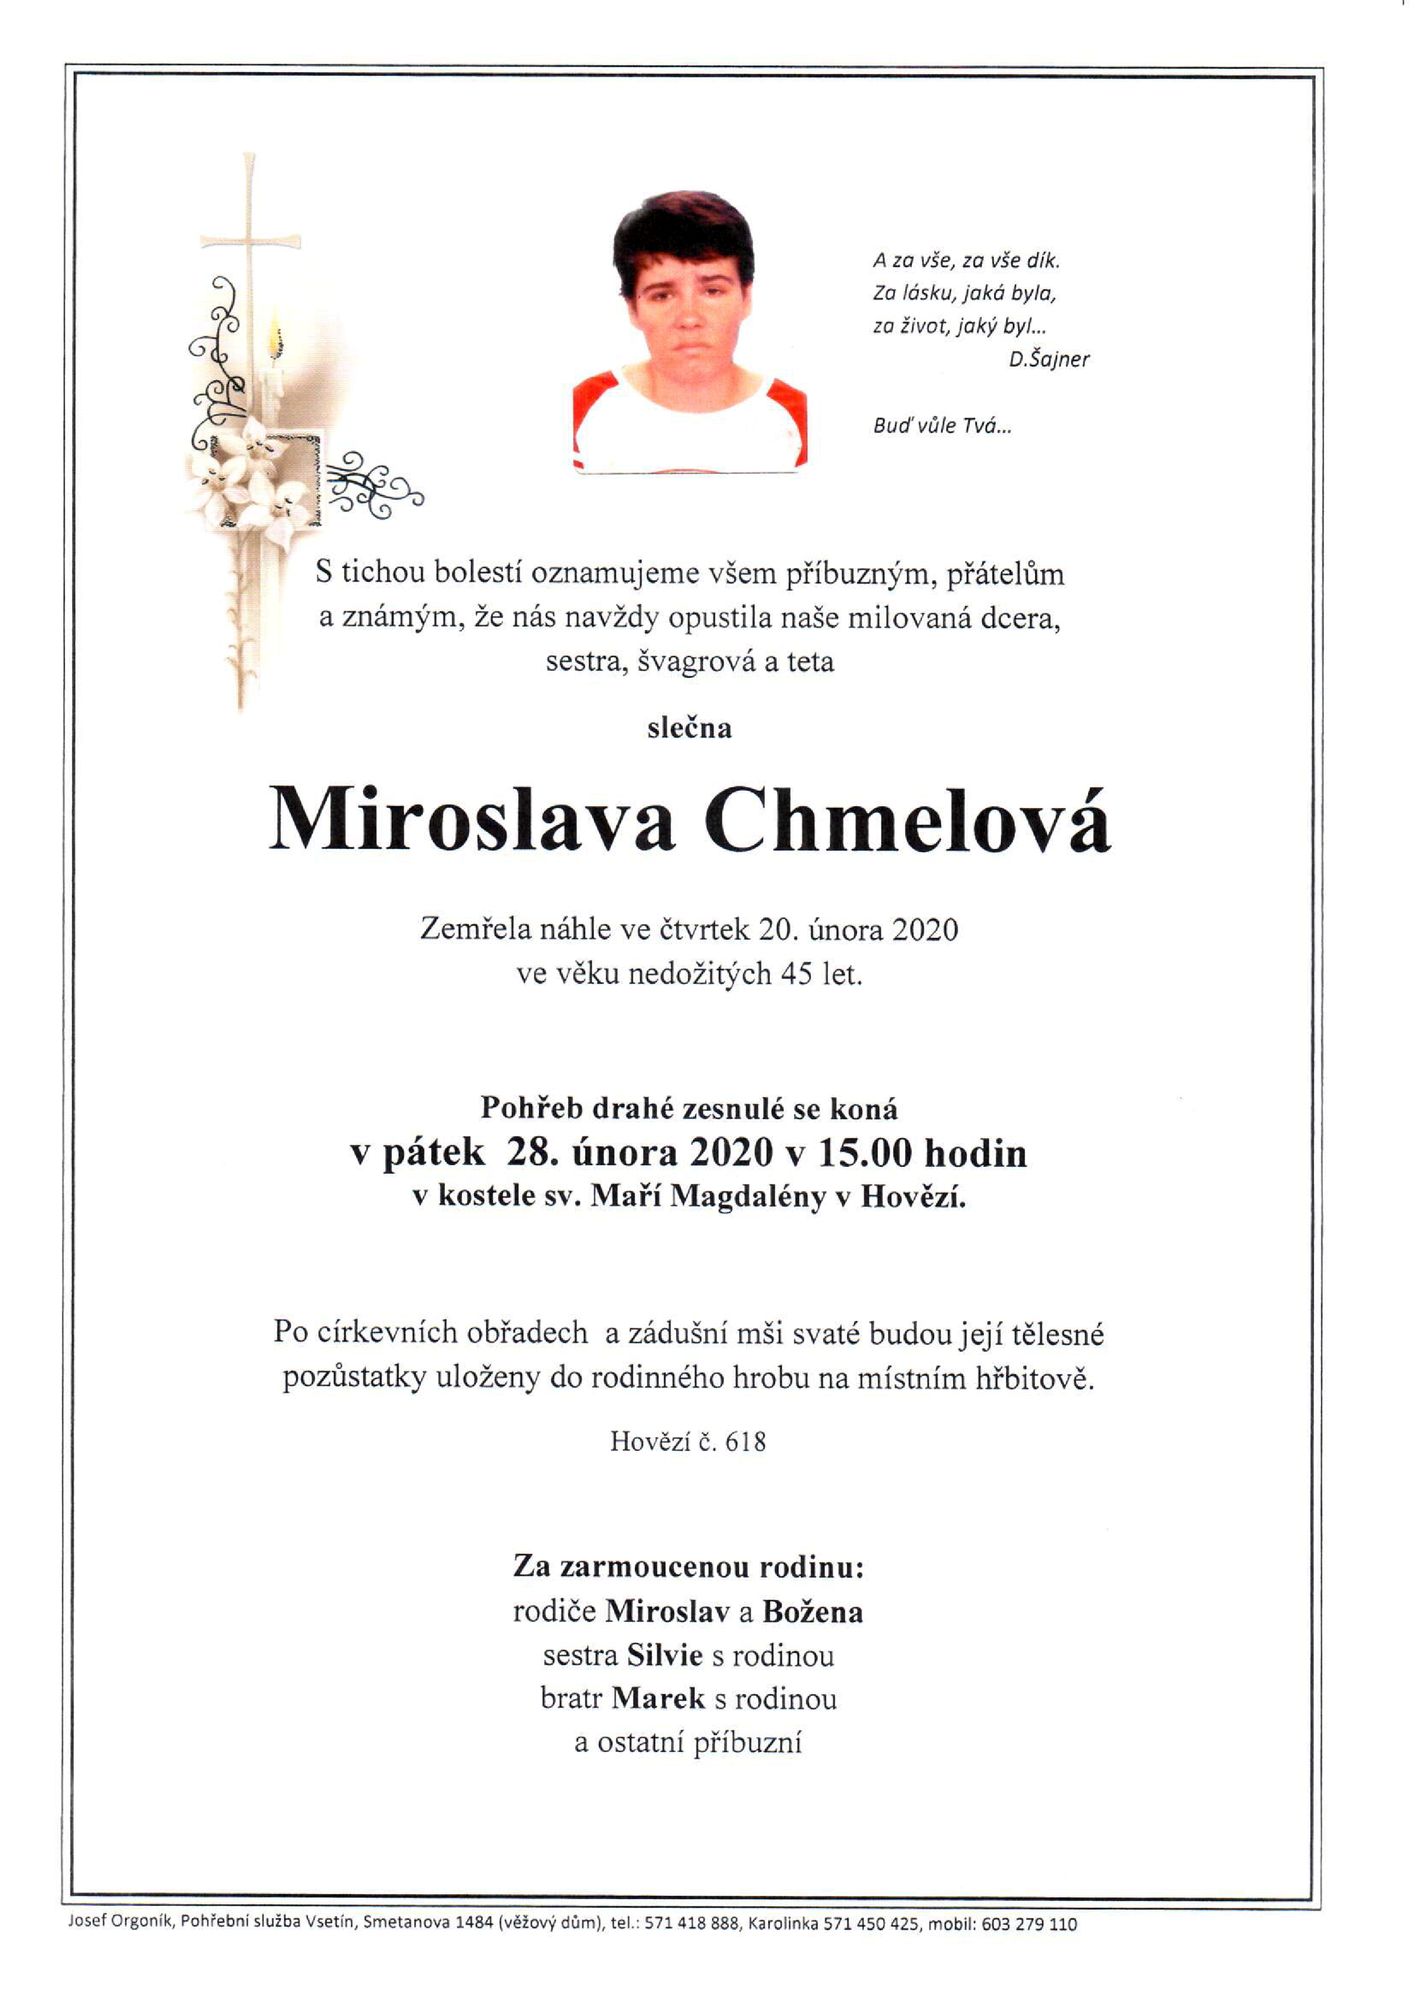 Miroslava Chmelová